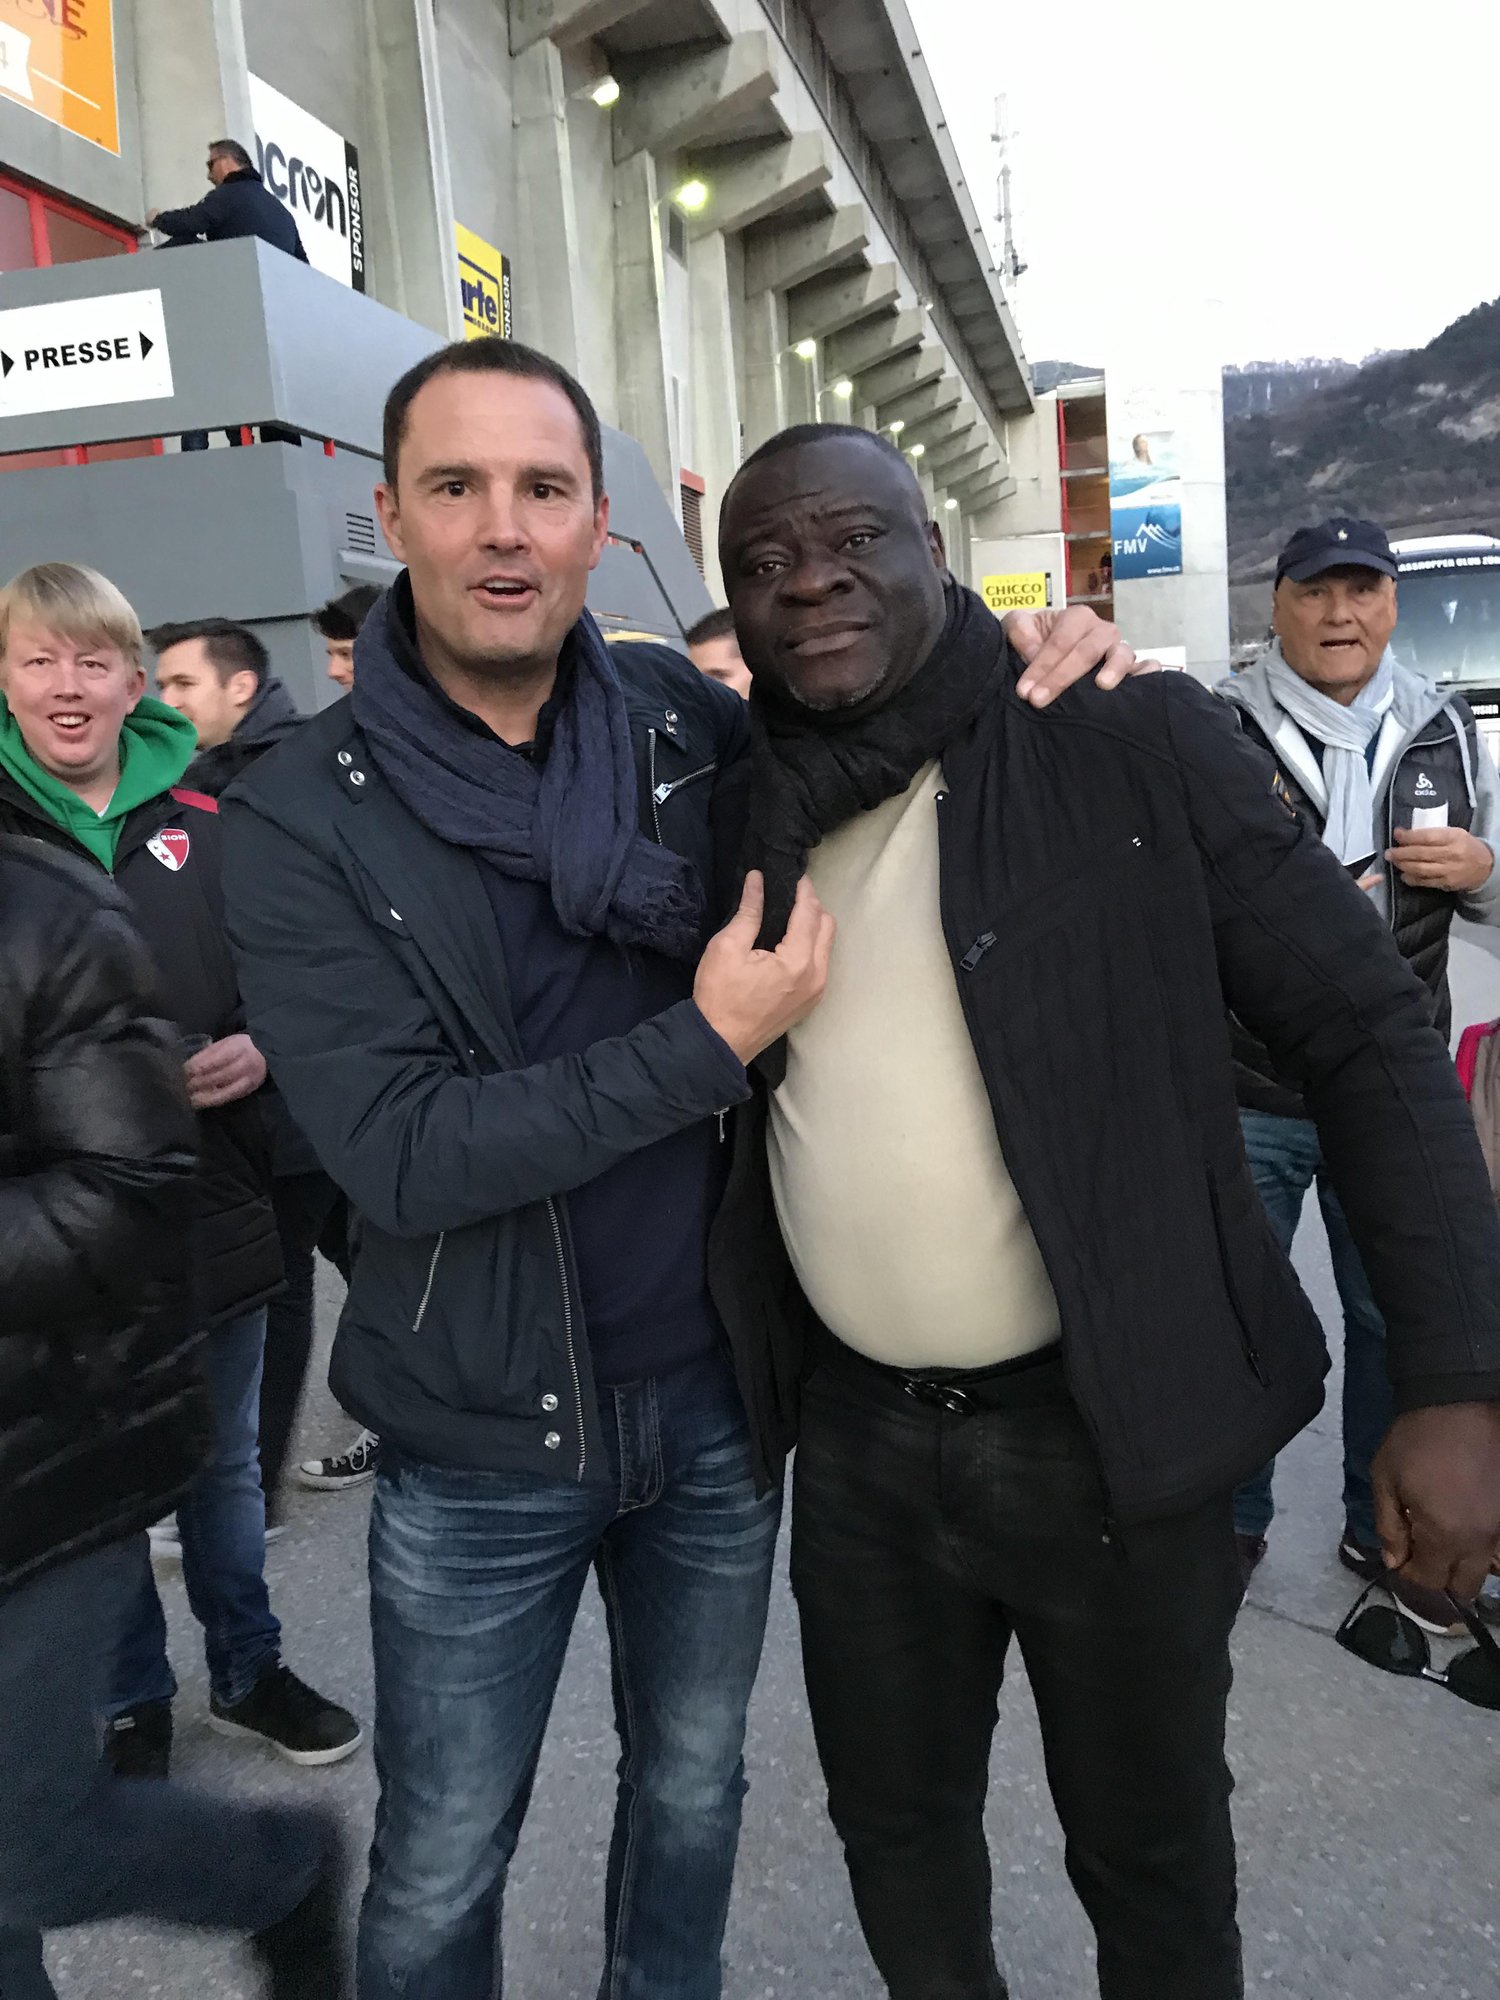 "C'est Ahmed OUattara" indique Olivier Biaggi, chambreur, lors de leurs retrouvailles devant le stade de Tourbillon avant le match Sion - Grasshopper. Les deux joueurs avaient fêté le doublé en 1997.